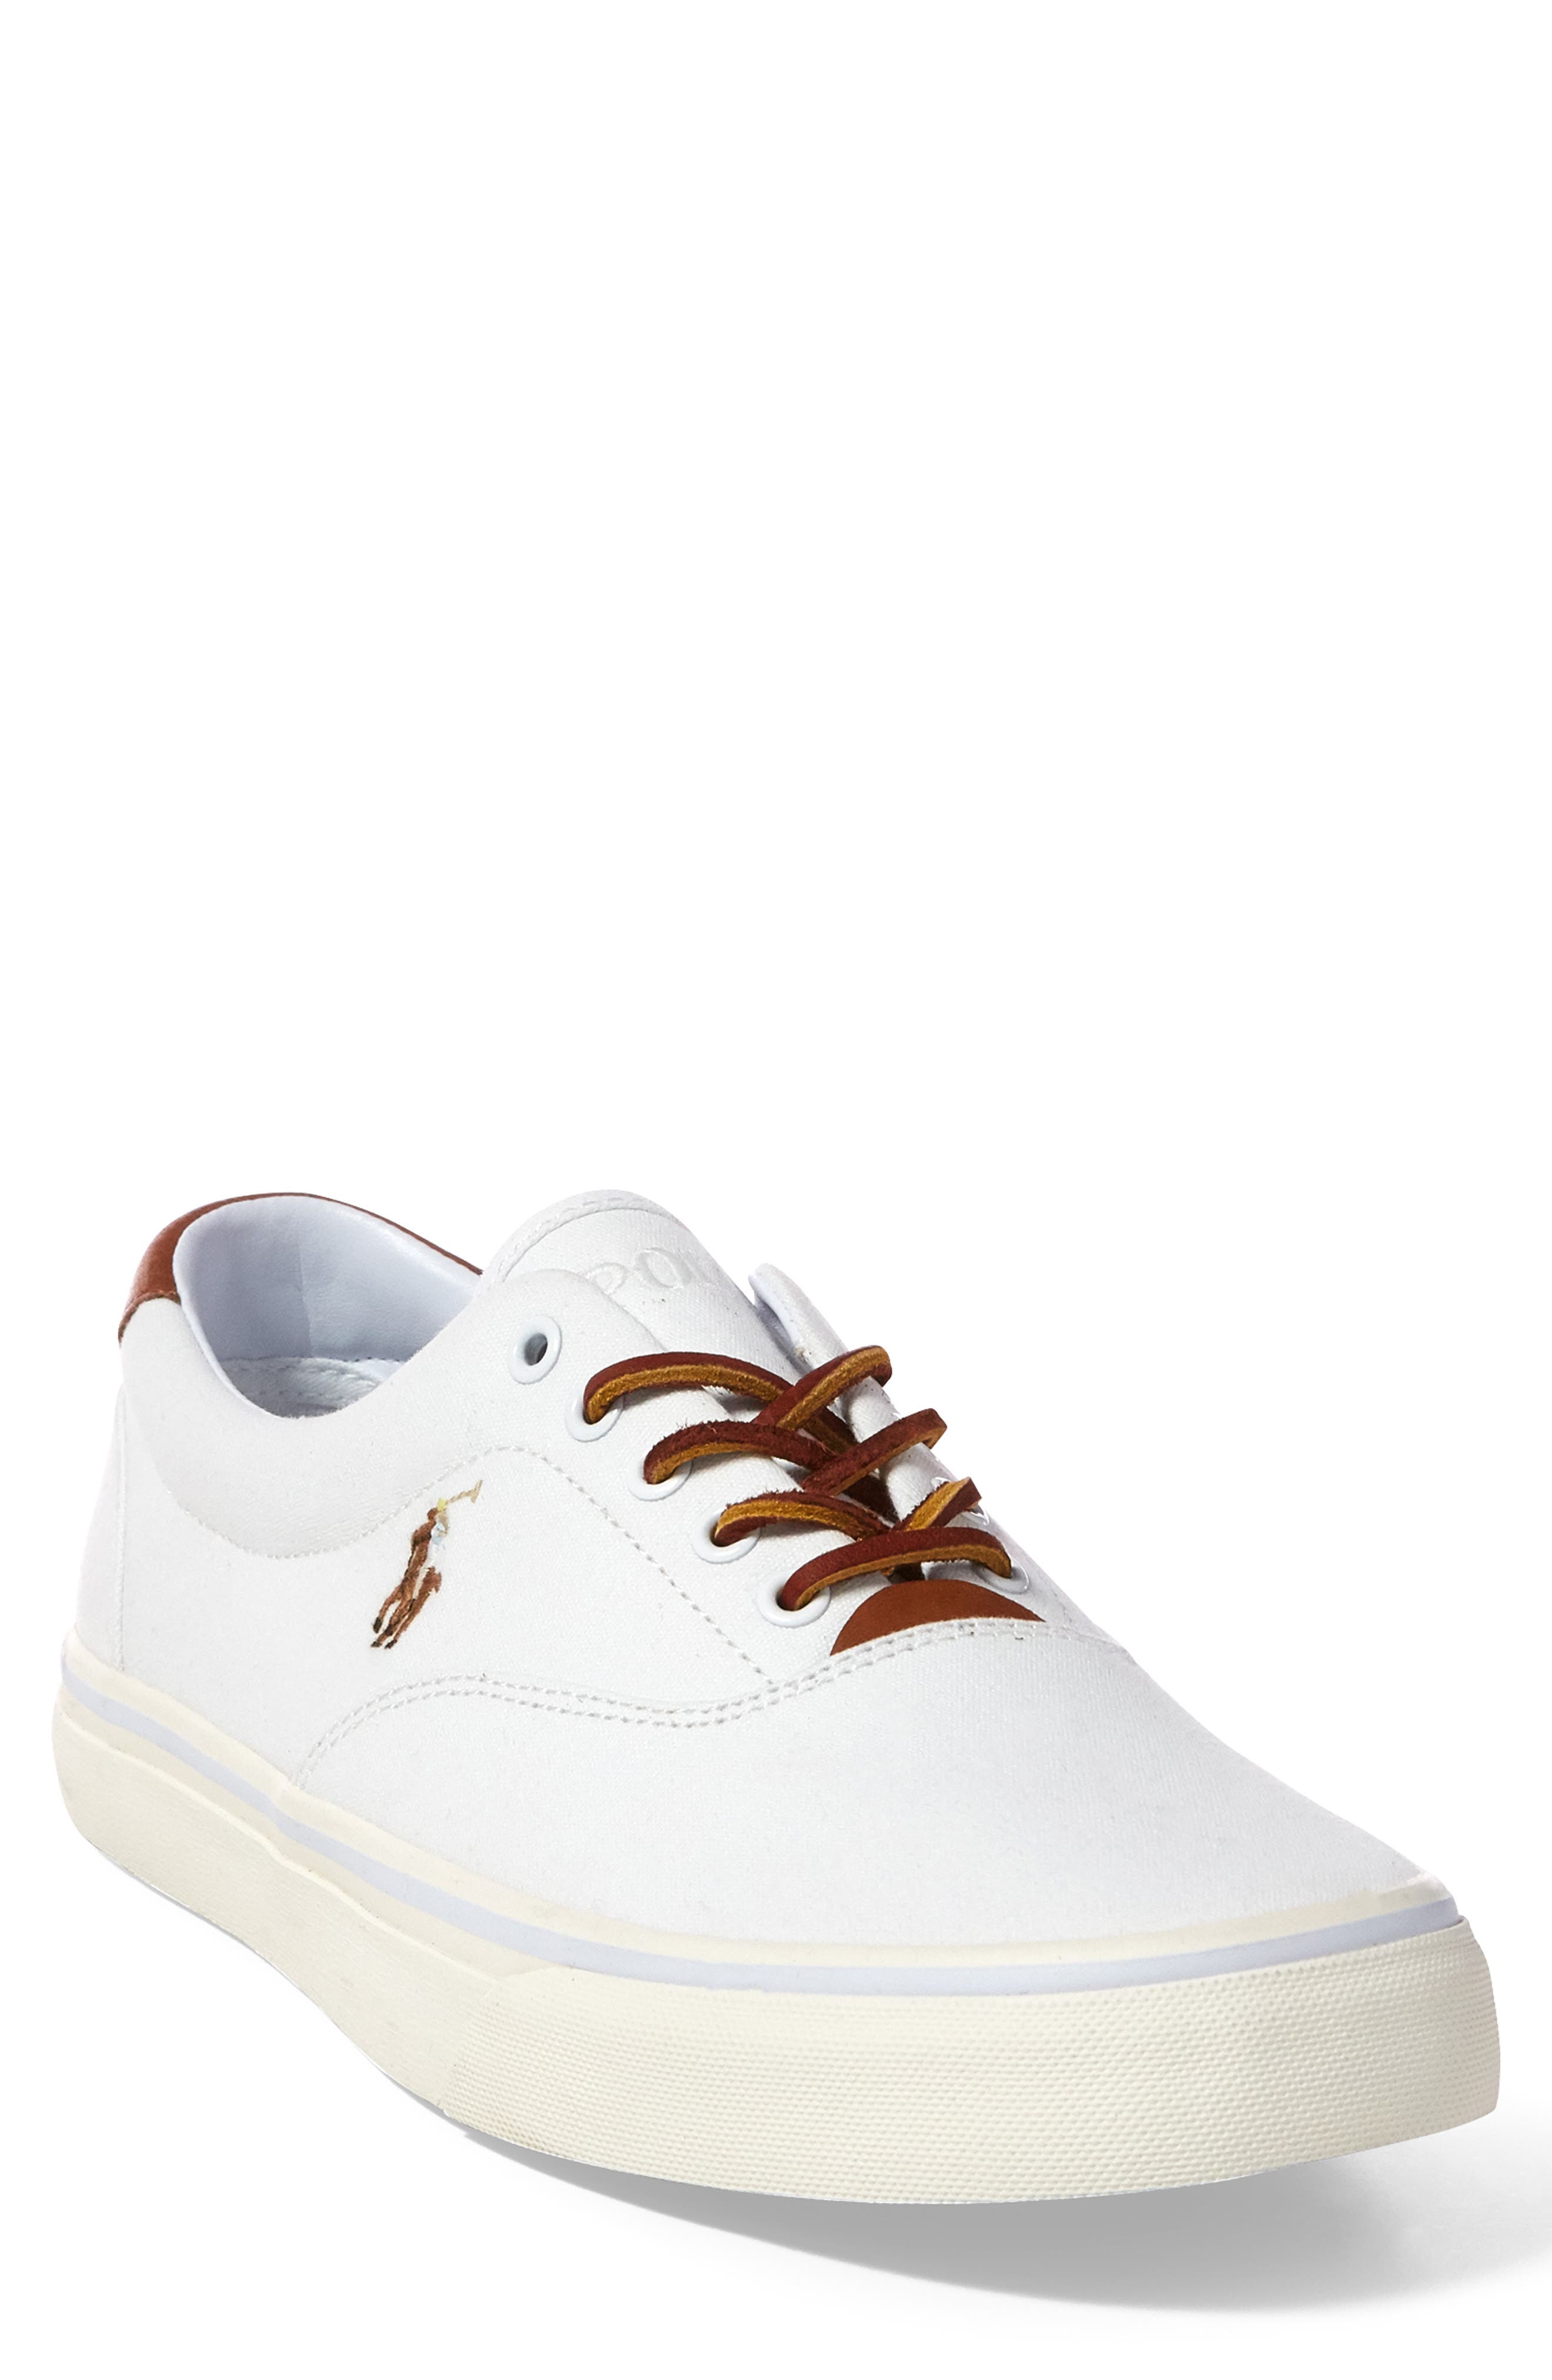 white polo shoes